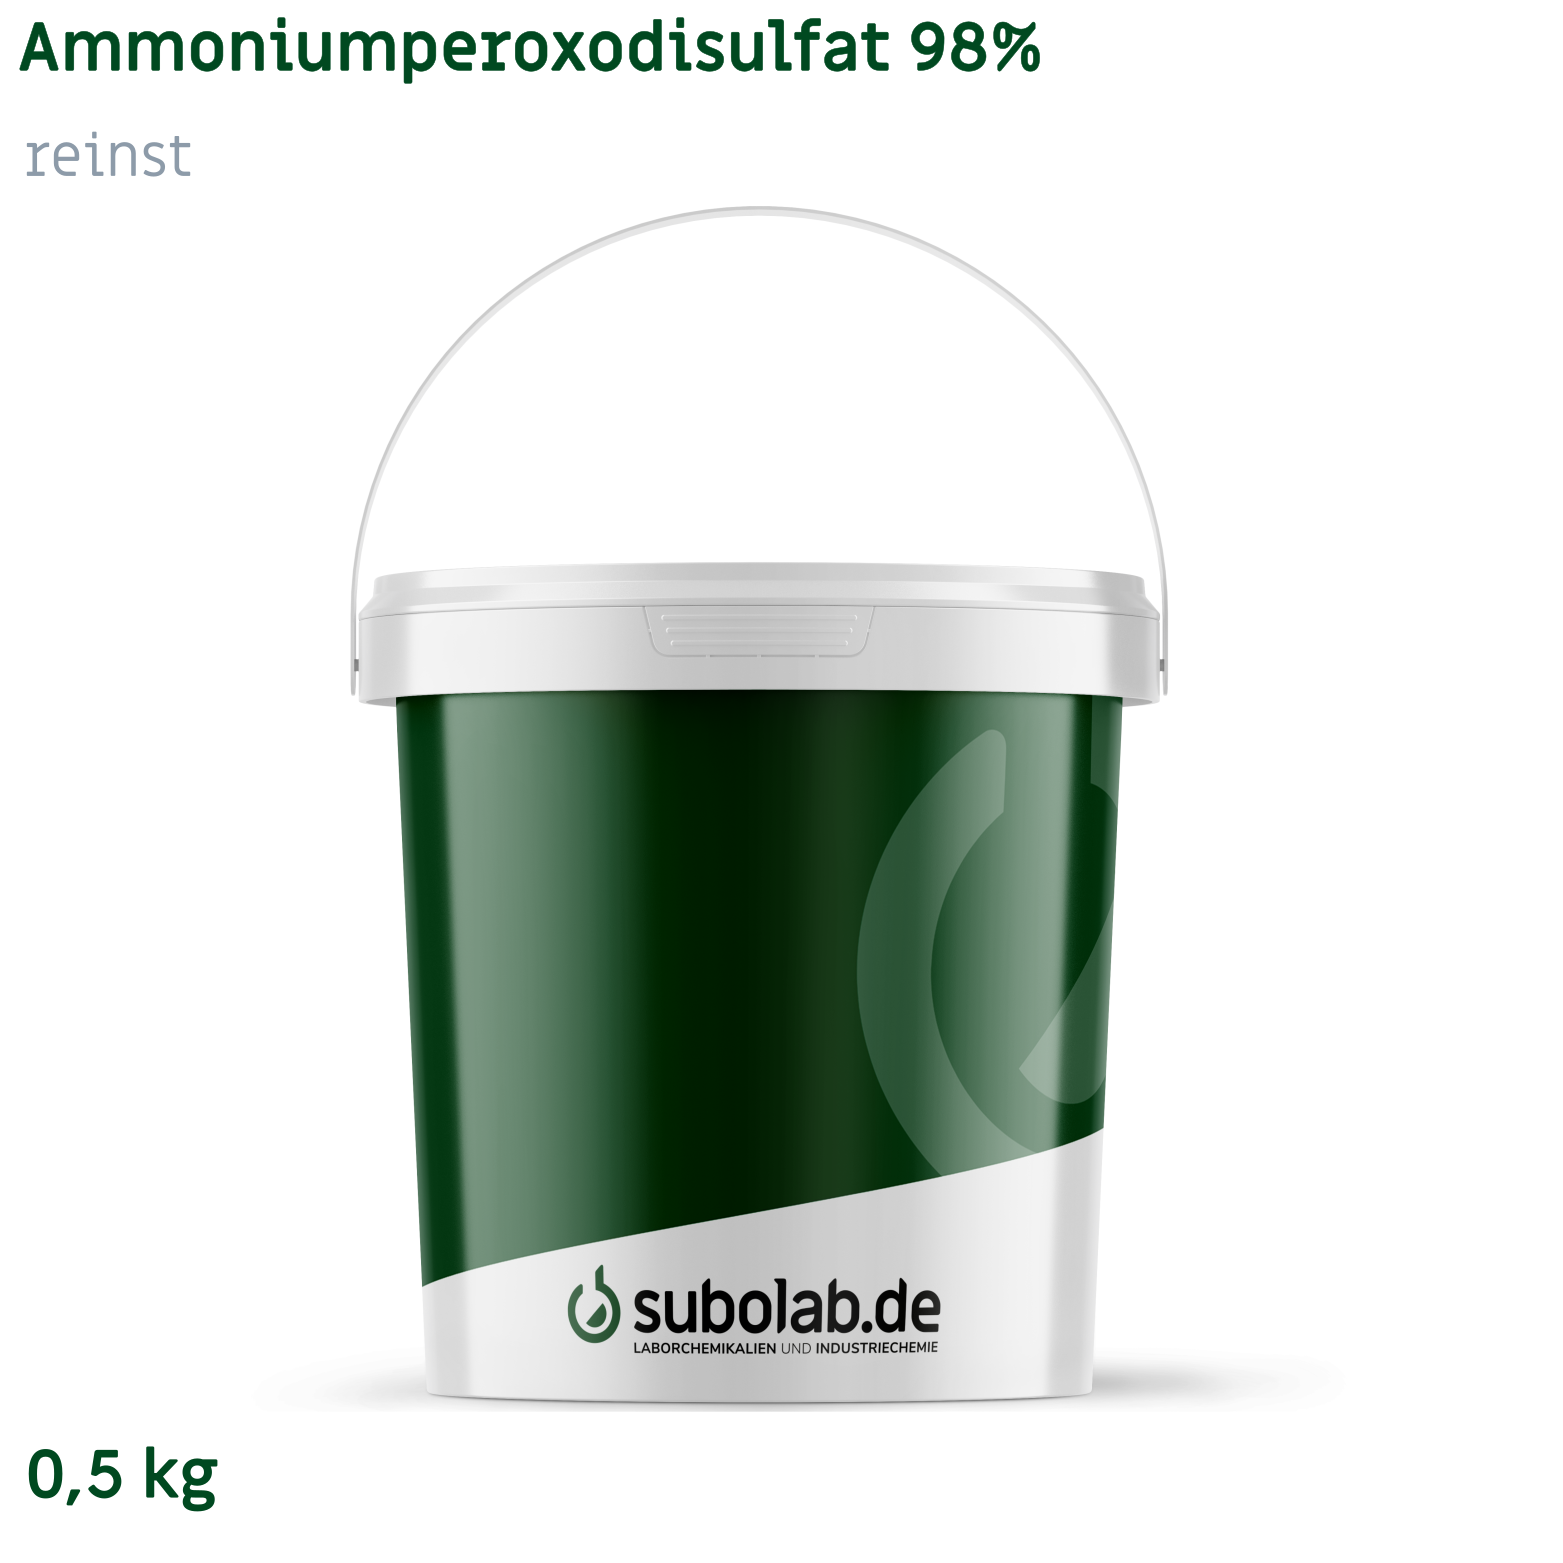 Bild von Ammoniumperoxodisulfat 98% reinst (0,5 kg)